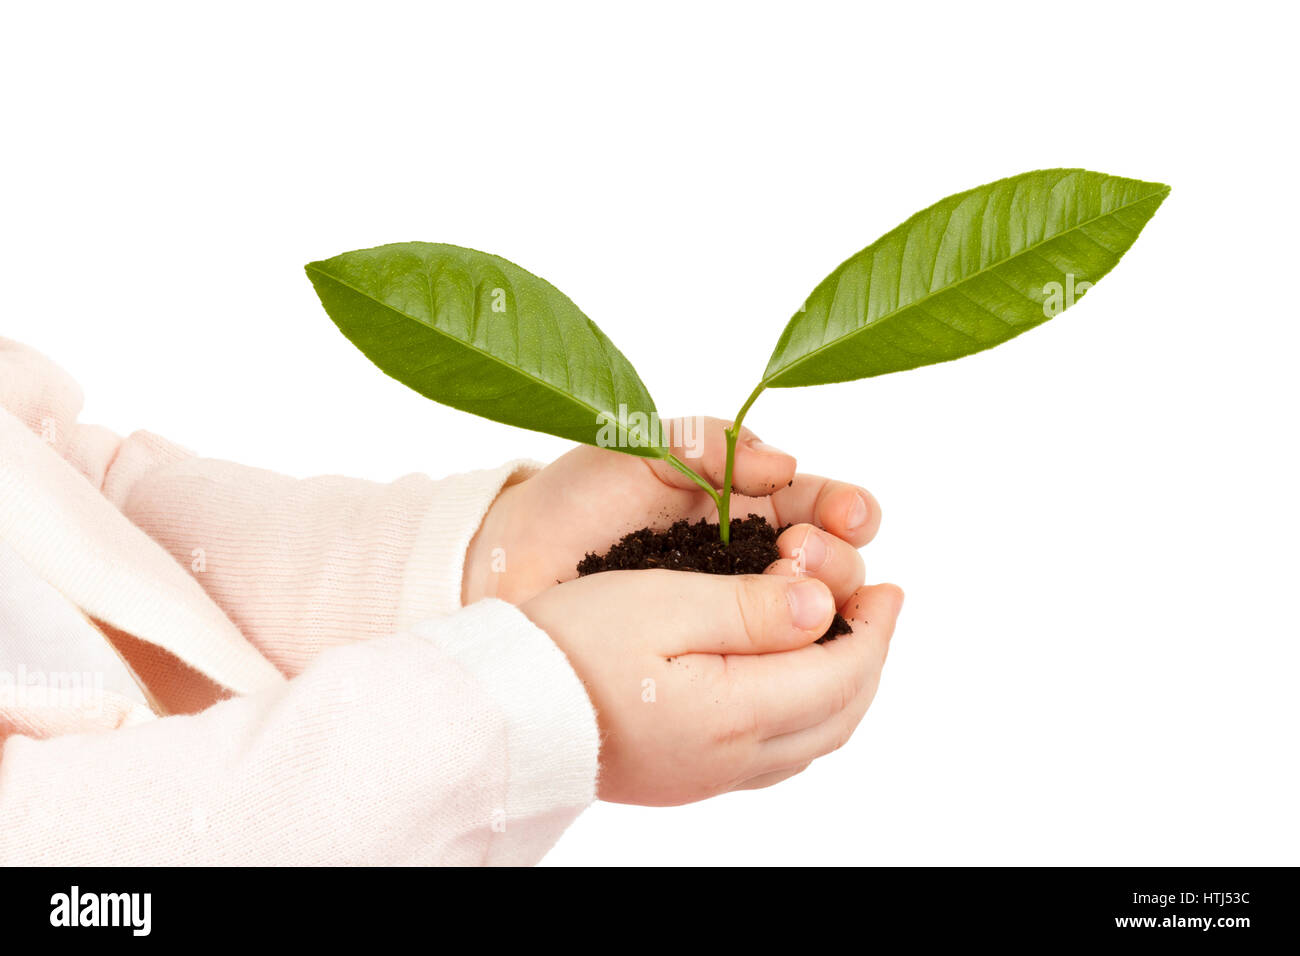 Bambino con le mani pianta verde isolato su sfondo bianco Foto Stock